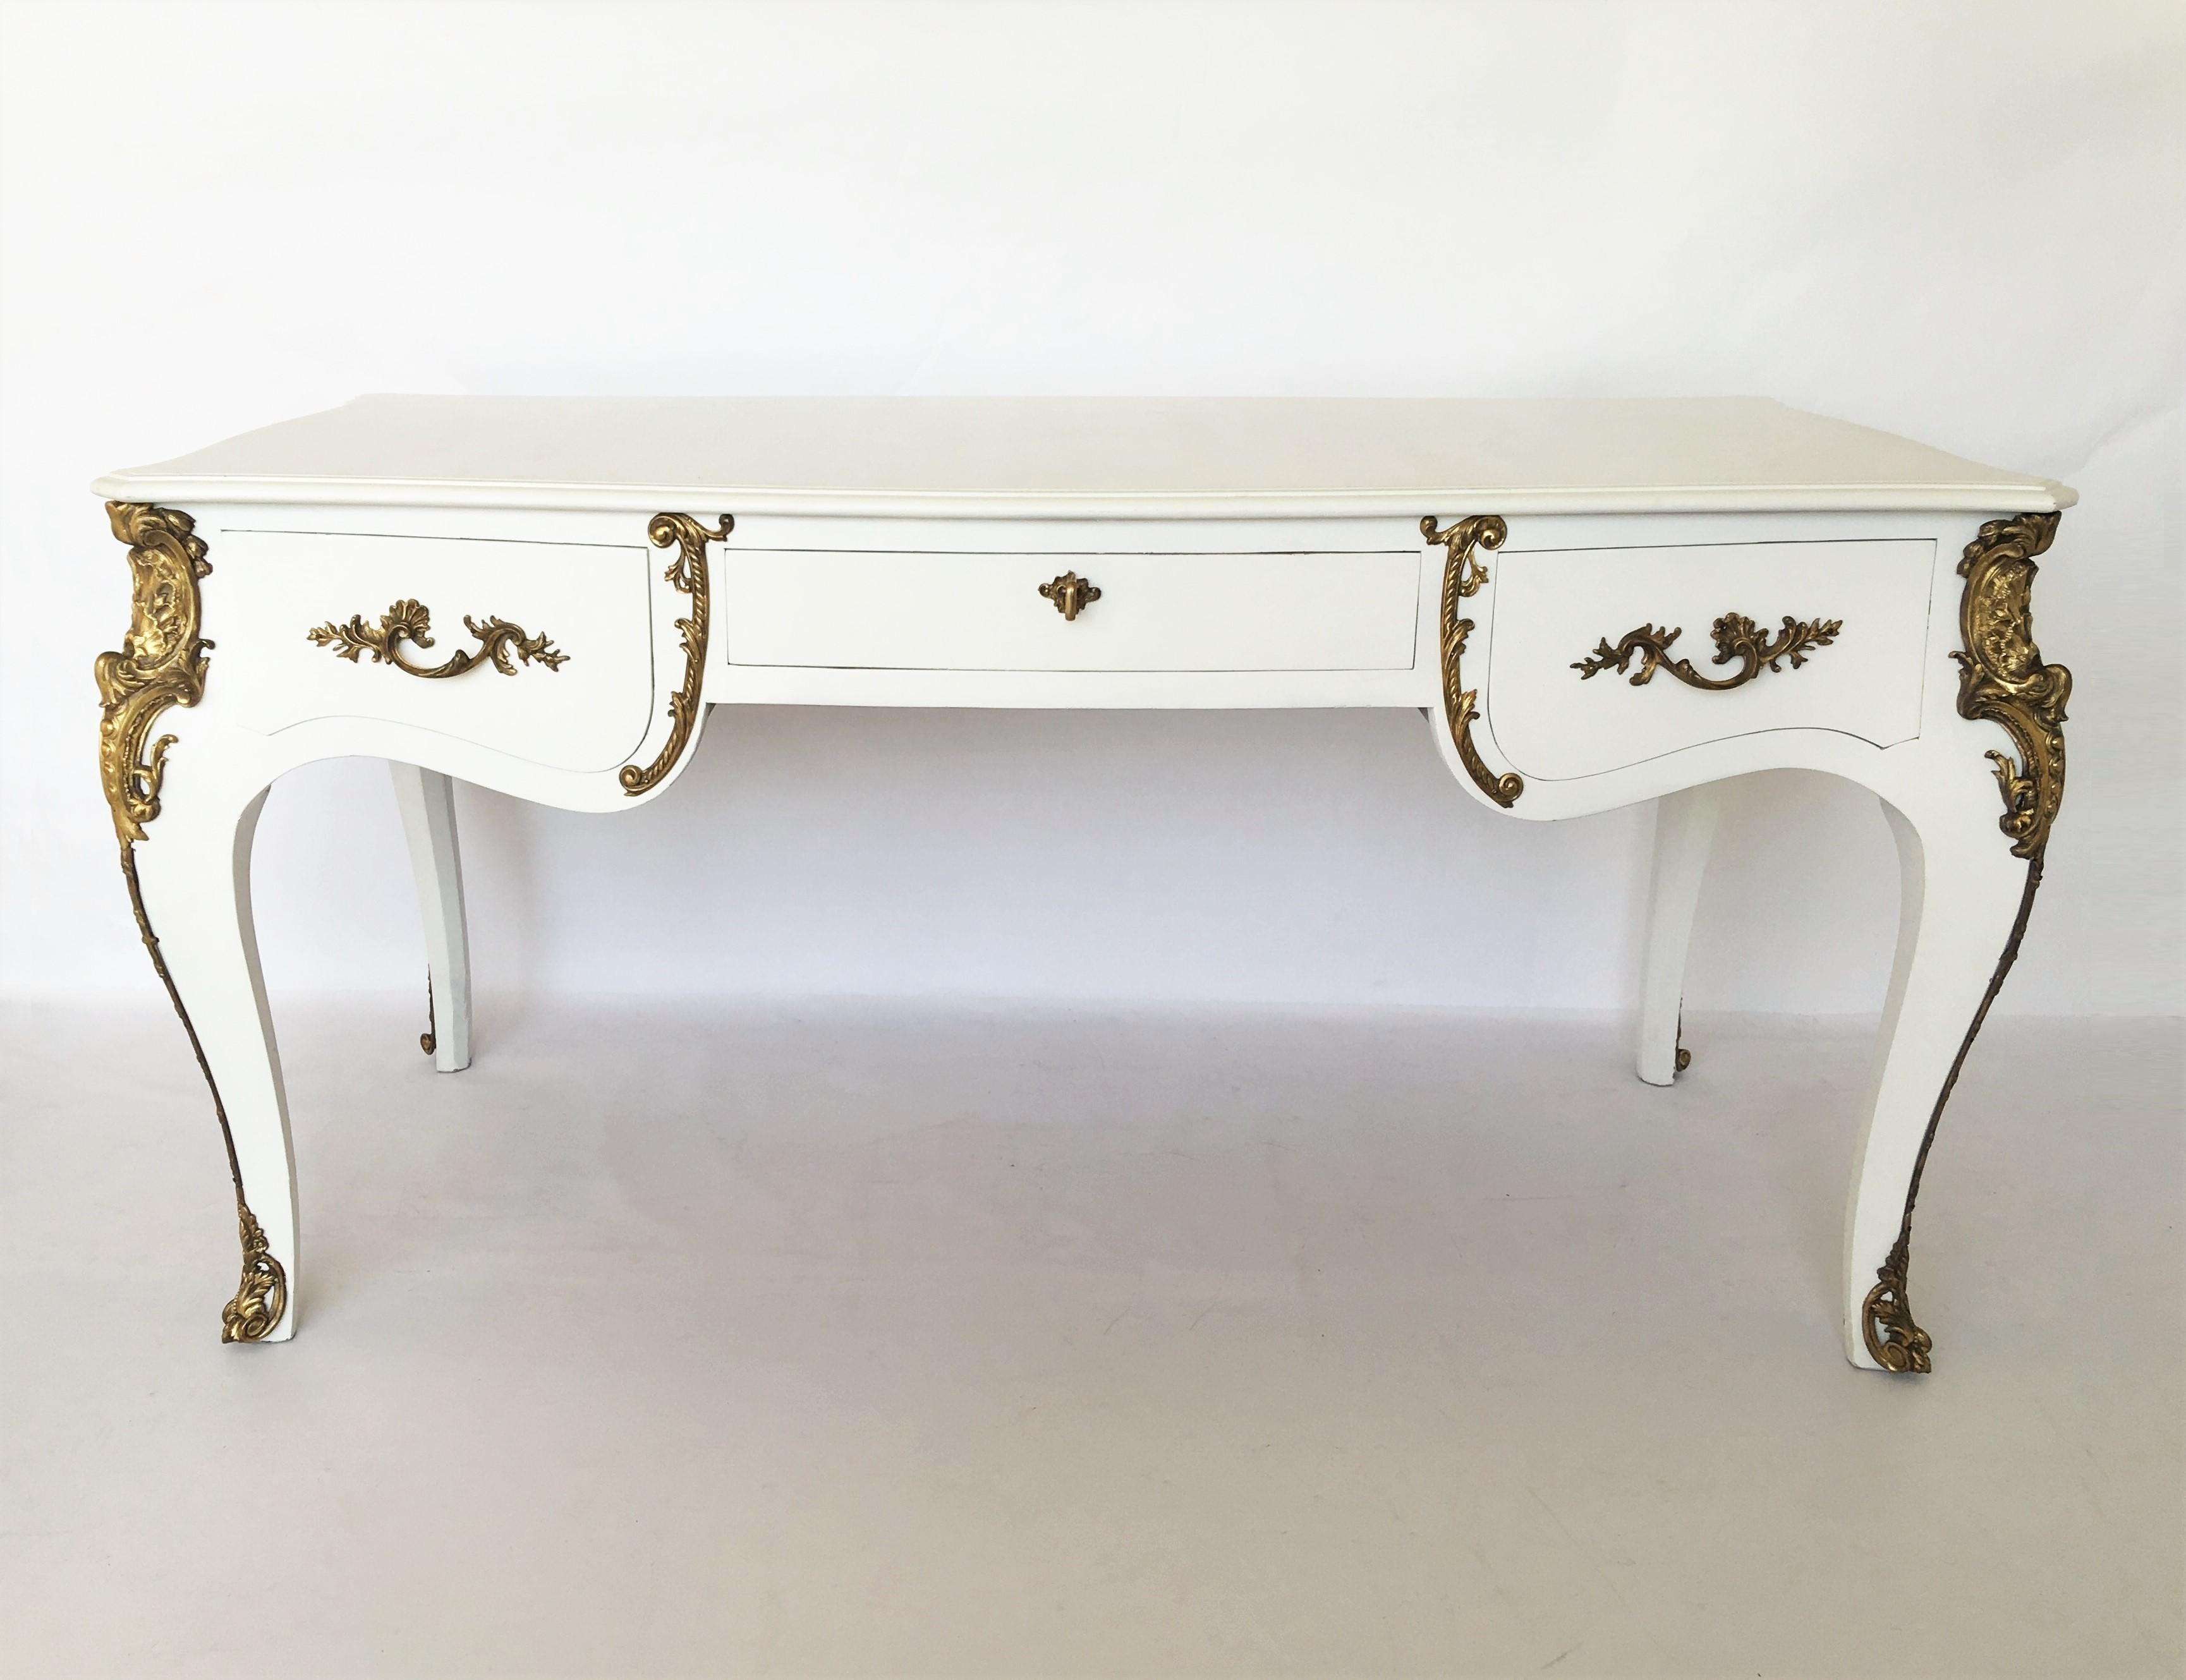 Feines, französisches Bureau plat oder Schreibtischtischchen. Hergestellt im großen Louis XV-Stil mit Bronzebeschlägen und weiß lackiertem Rahmen. Mit Originalschlüssel. Die eine Seite ist mit drei Schubladen mit tiefem Auszug ausgestattet, die